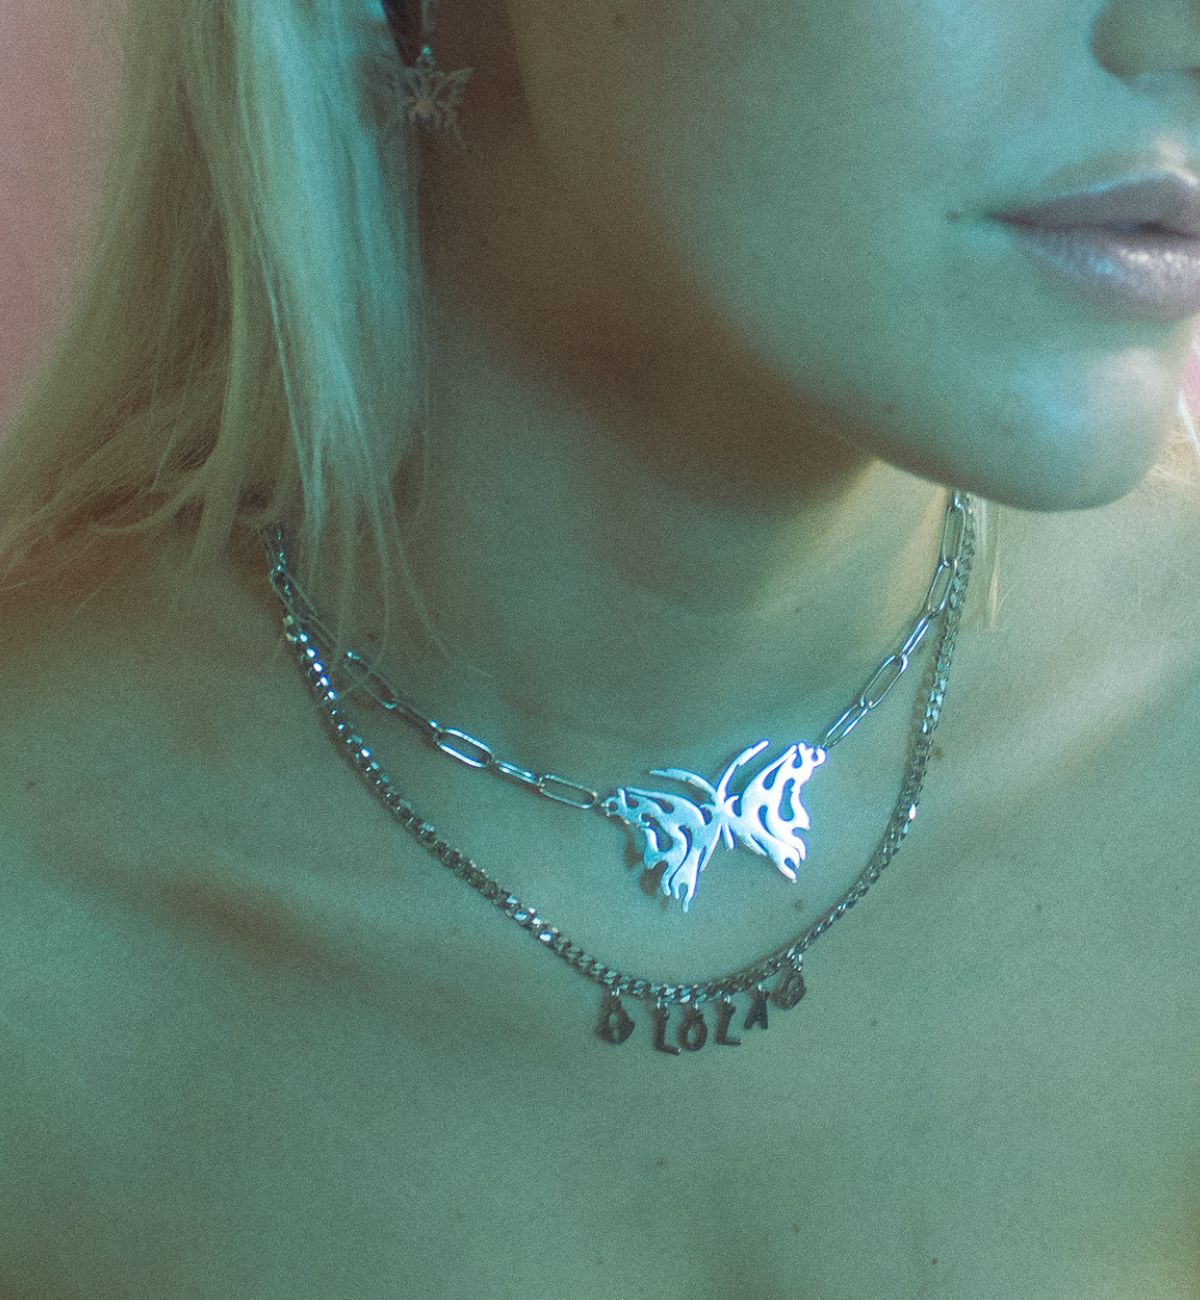 'flutter' necklace